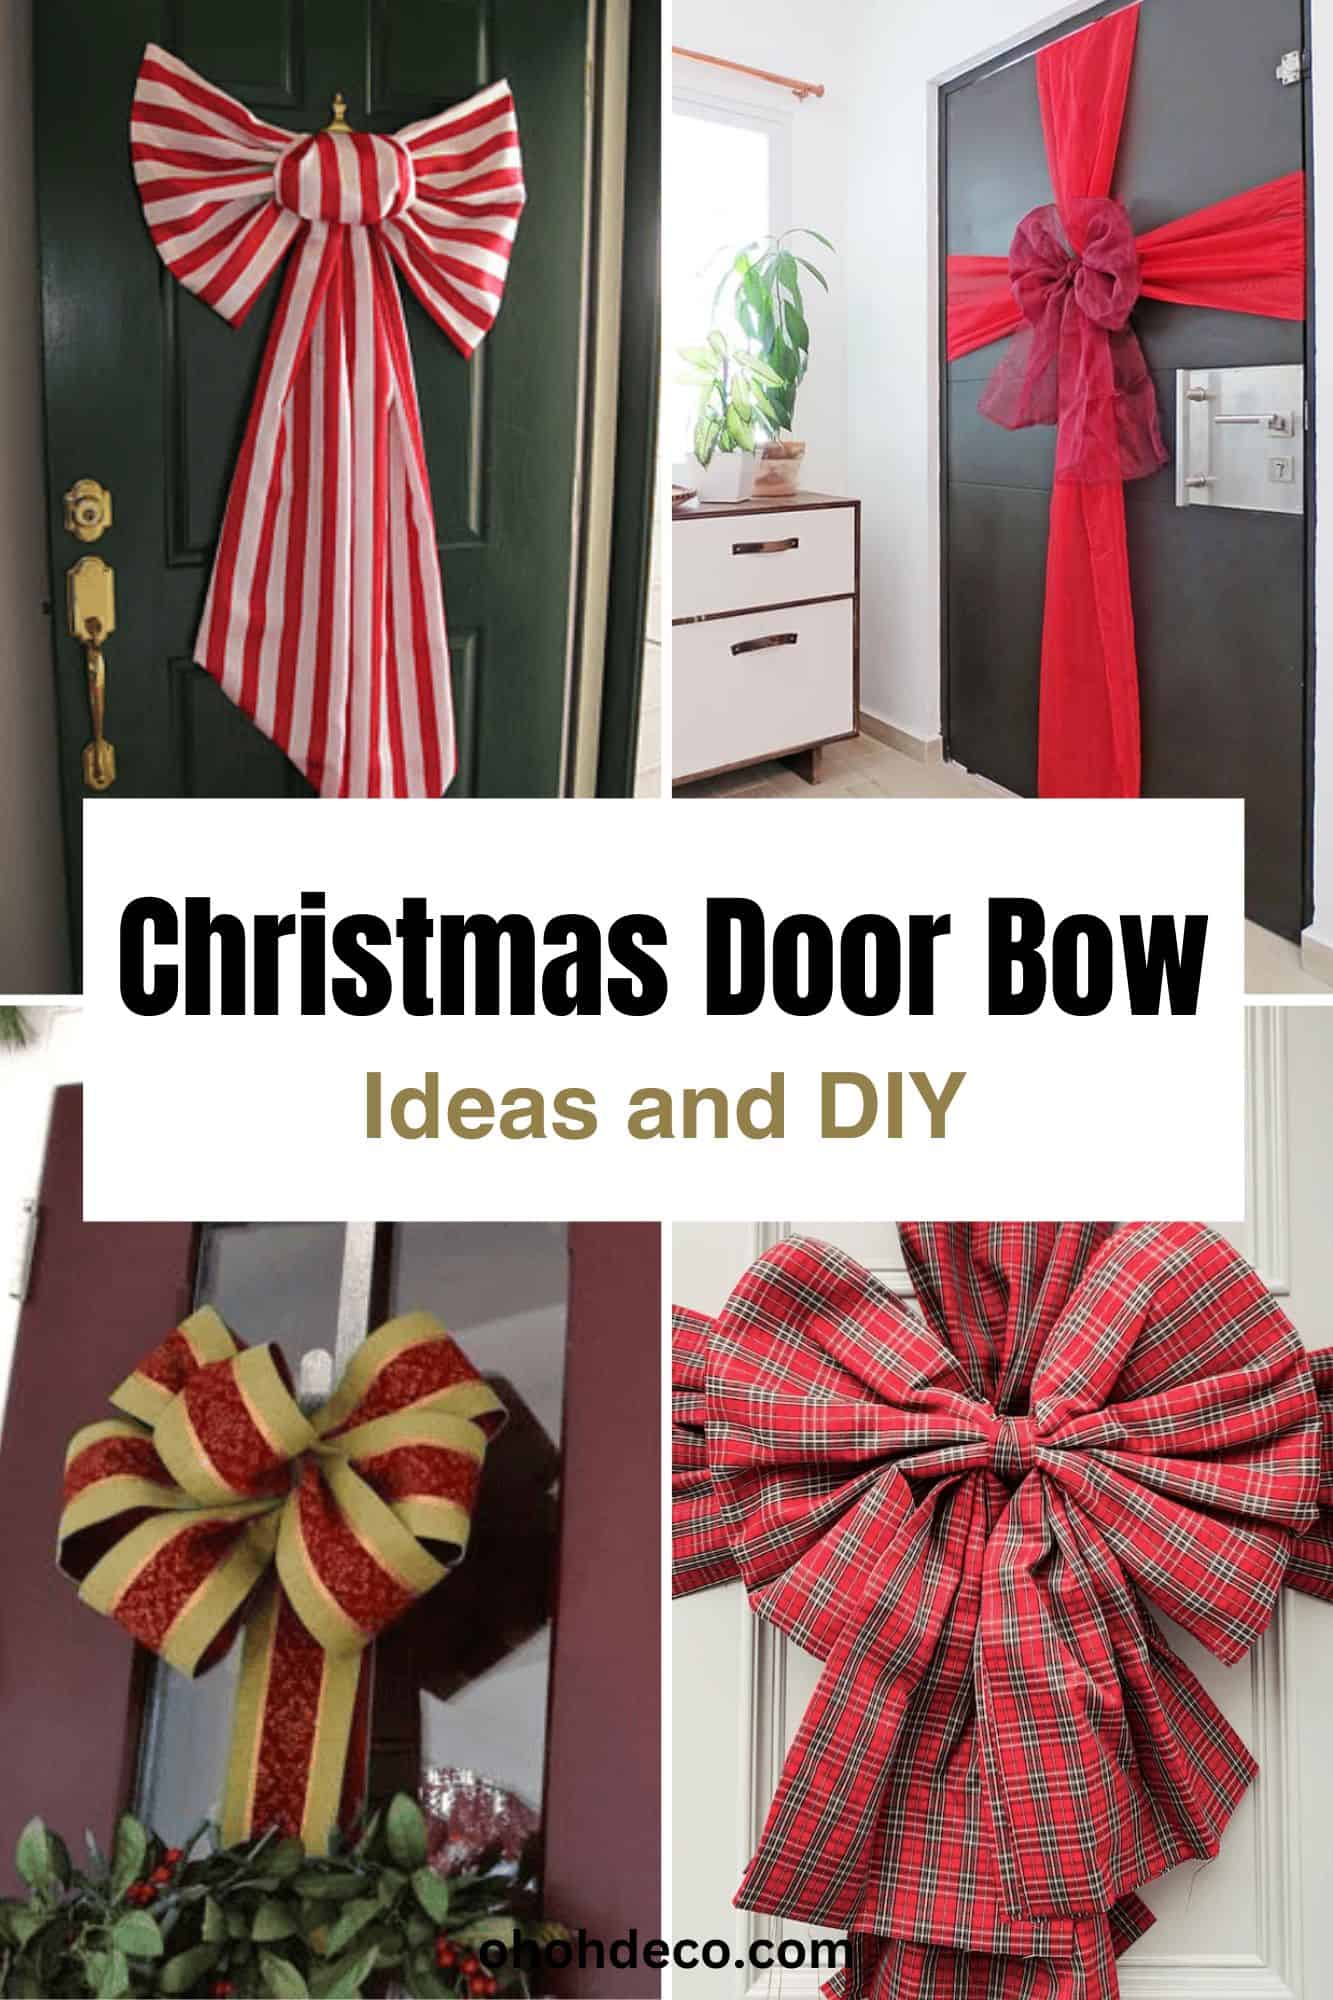 Christmas door bow - ideas and DIY